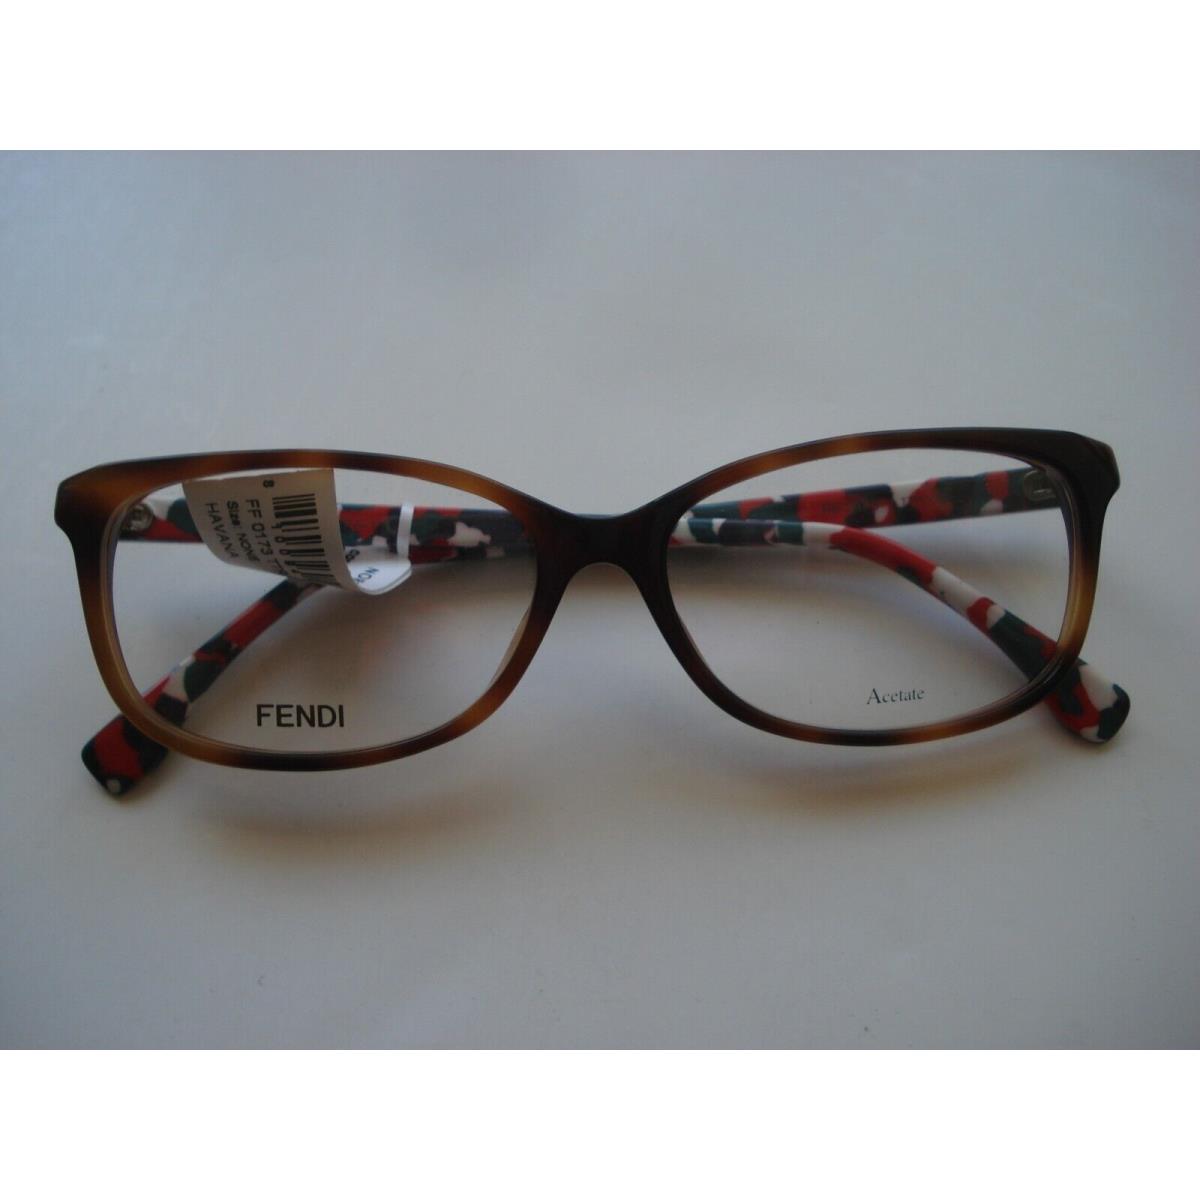 Fendi eyeglasses TTR - Brown Frame 1